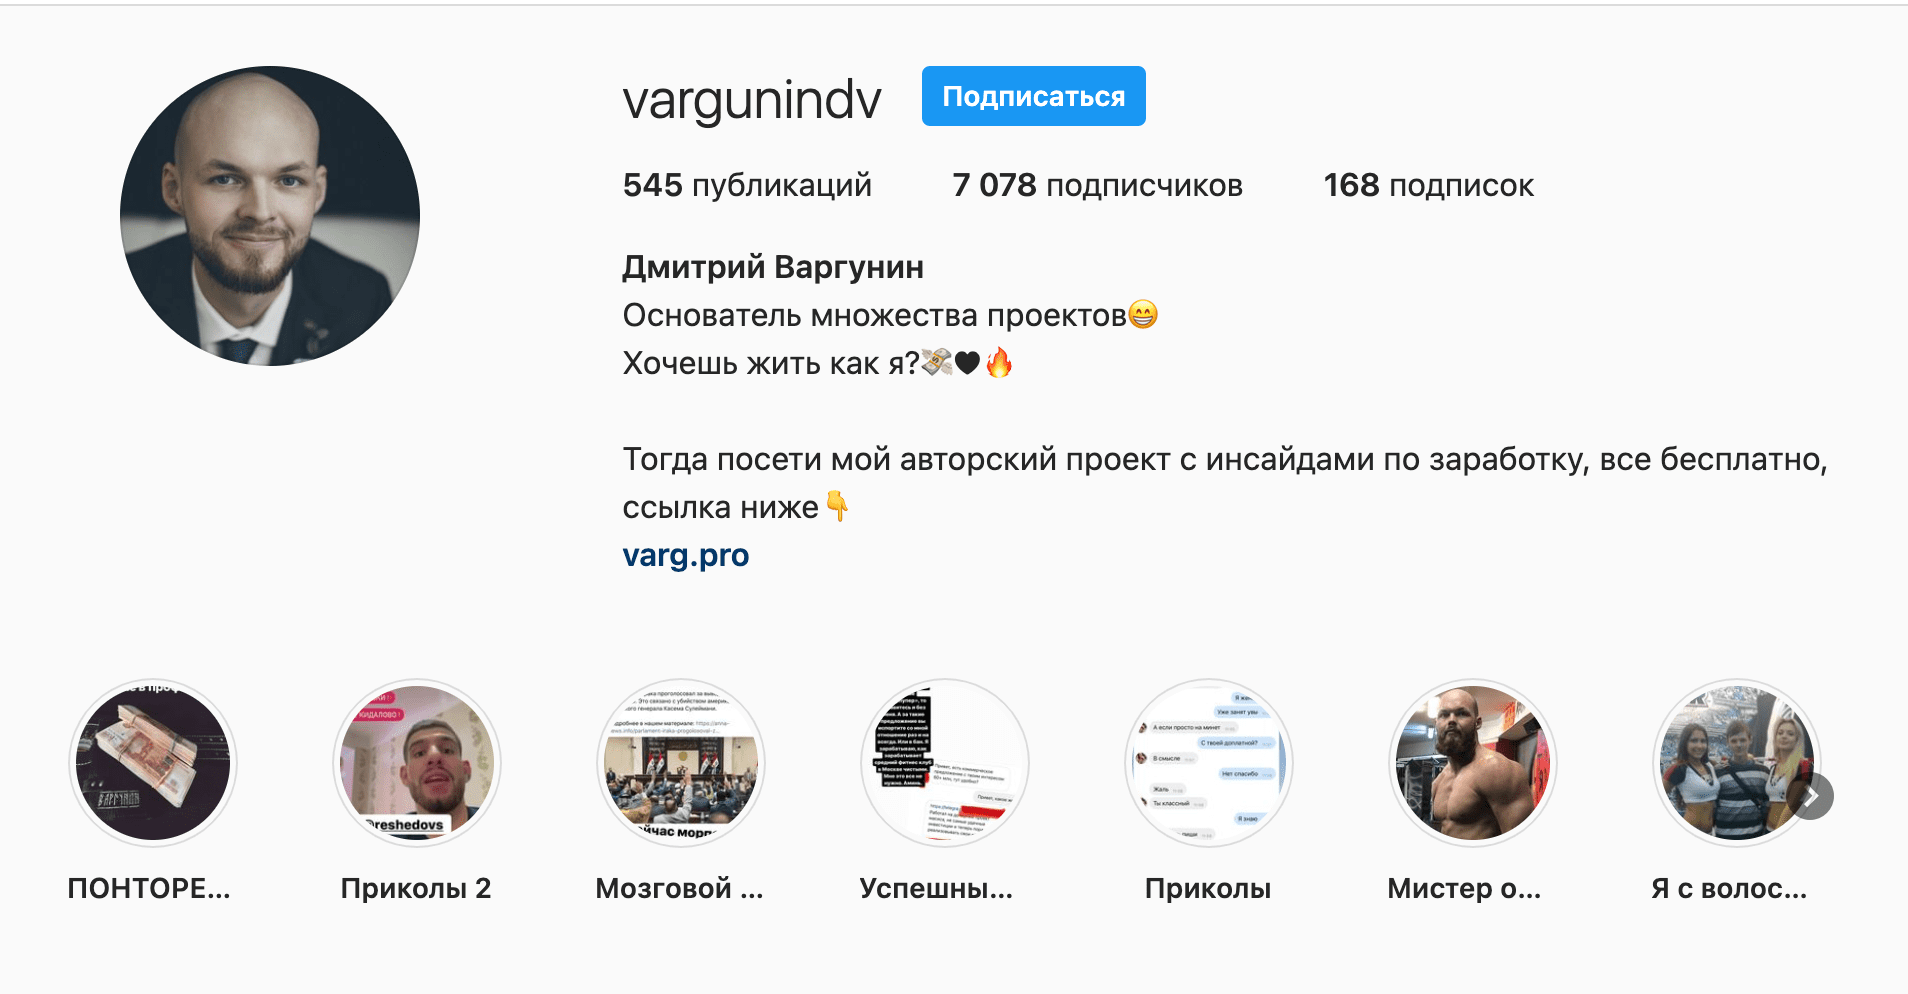 Личный инстаграм Дмитрия Варгунина (Основателя Team “VARG”)